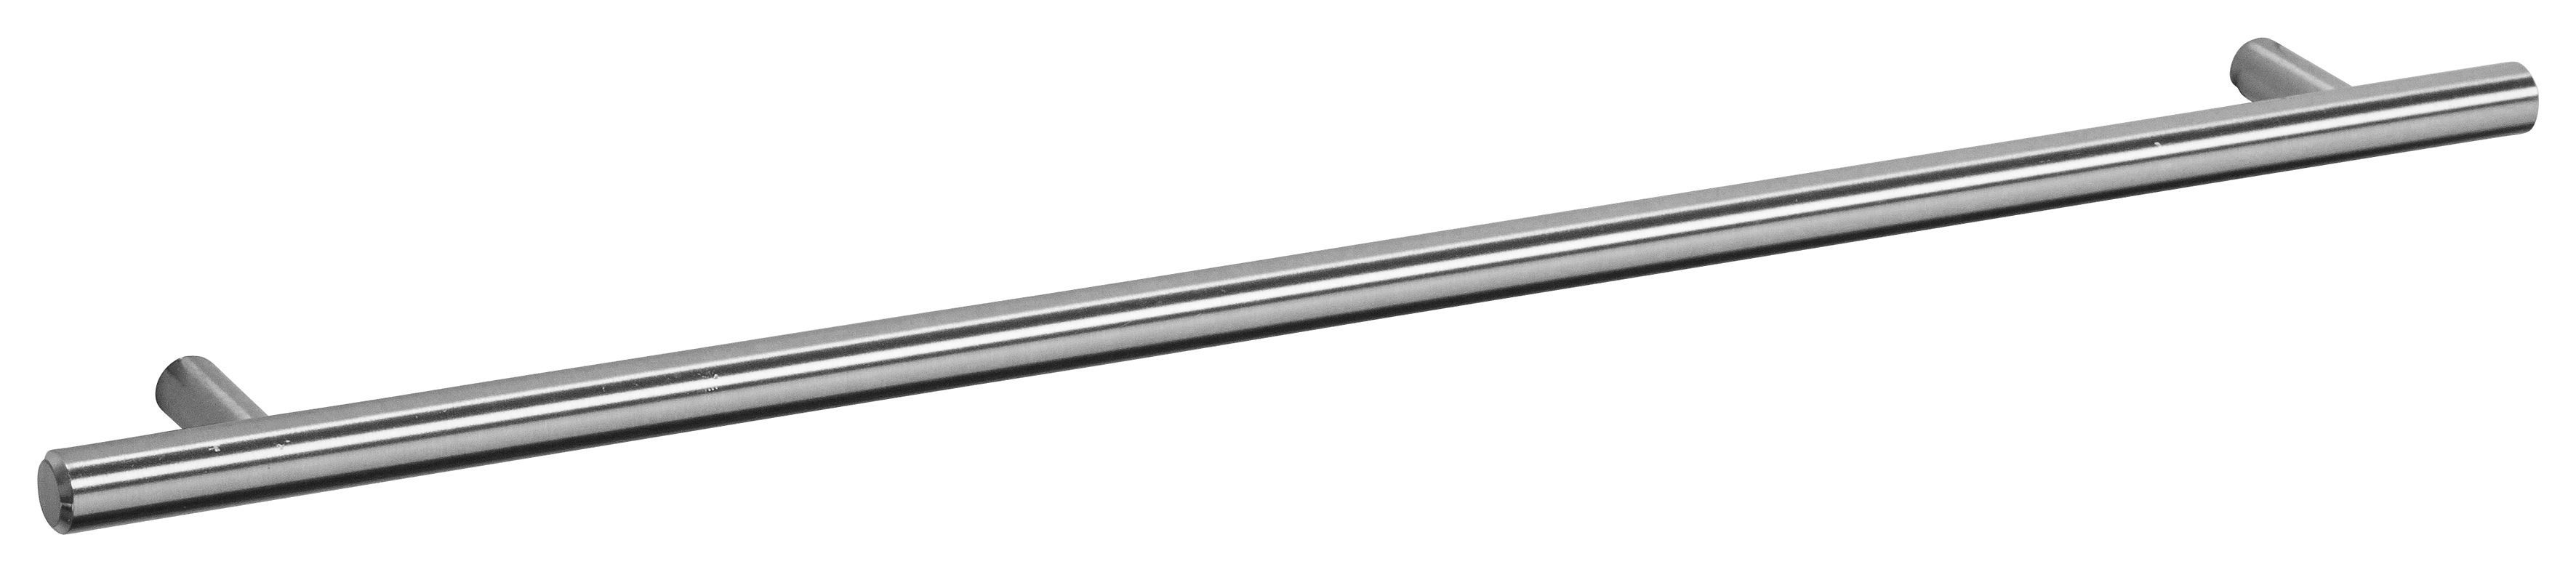 OPTIFIT Spülenschrank Bern 50 cm breit, mit 1 Tür, mit höhenverstellbaren  Füßen, mit Metallgriff